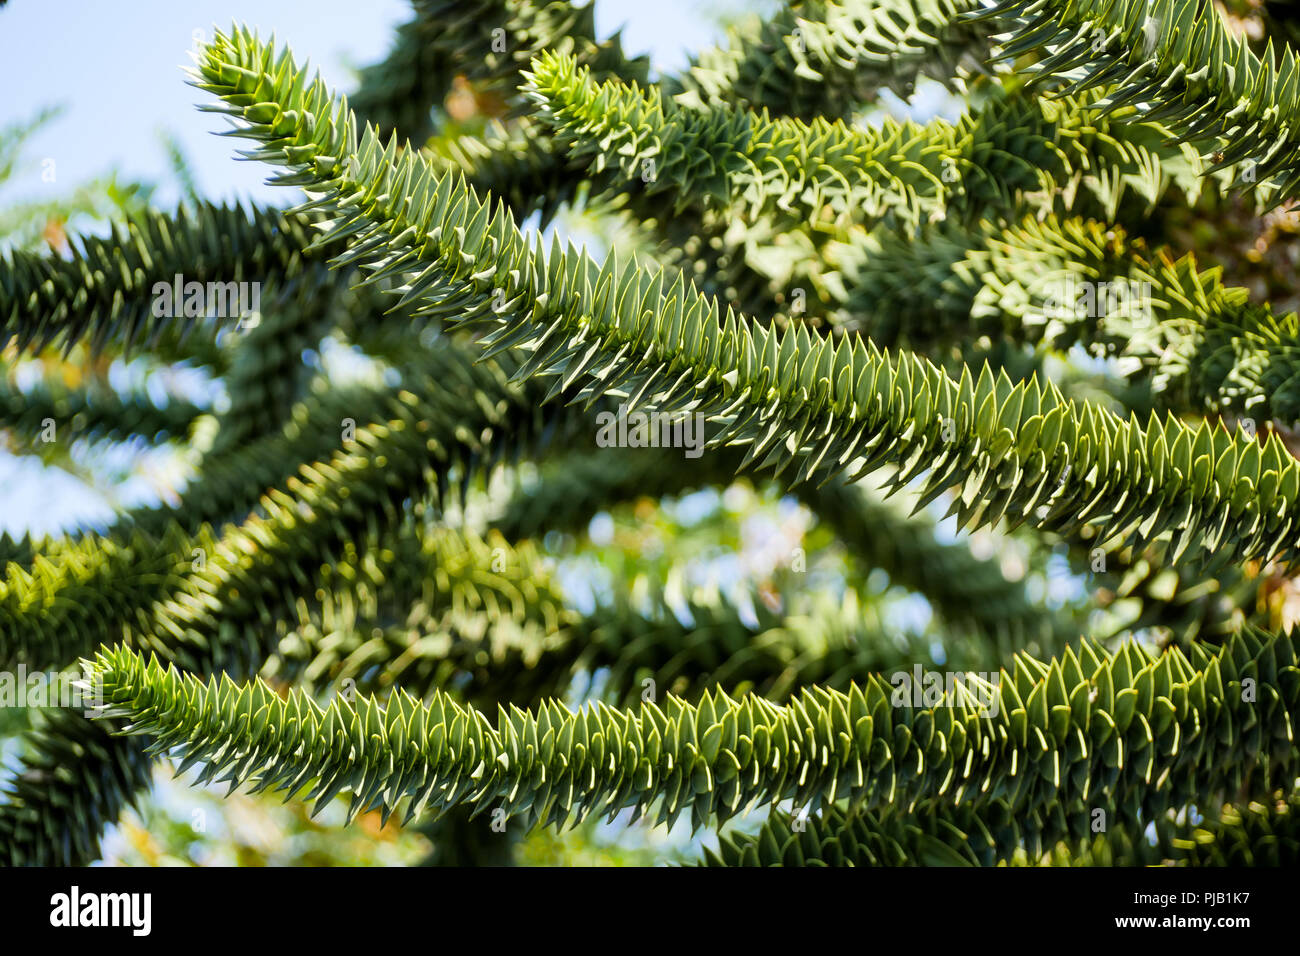 Araucaria tree, Birds Park, Villars Les Dombes, France Stock Photo